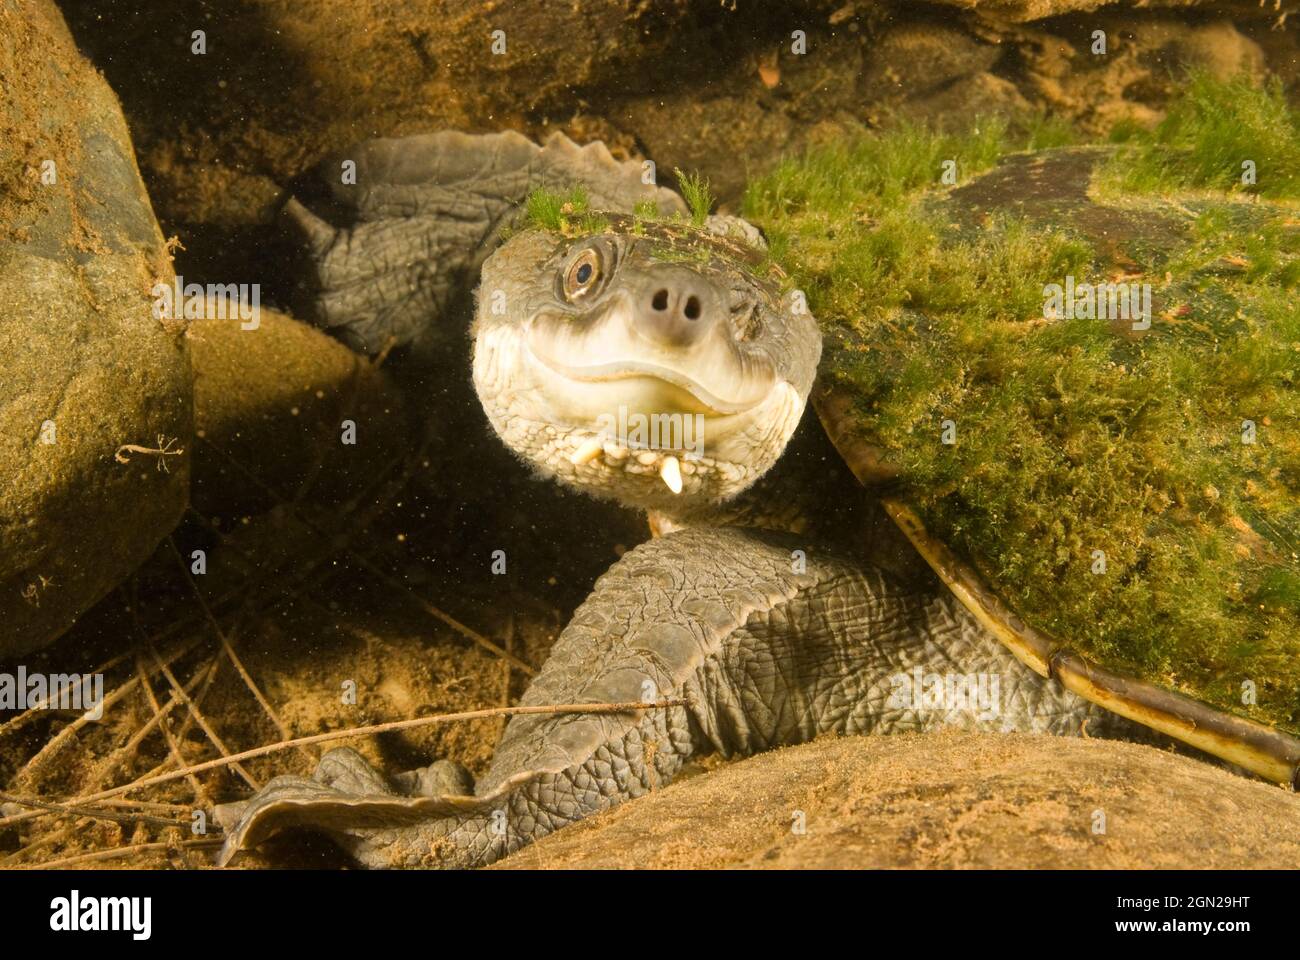 La tortue serpentine de la rivière Bellinger (Elseya georgesi), les recherches sur la rivière Bellinger depuis plus de 20 ans ont localisé l'espèce dans seulement quatre sites. Le popu Banque D'Images